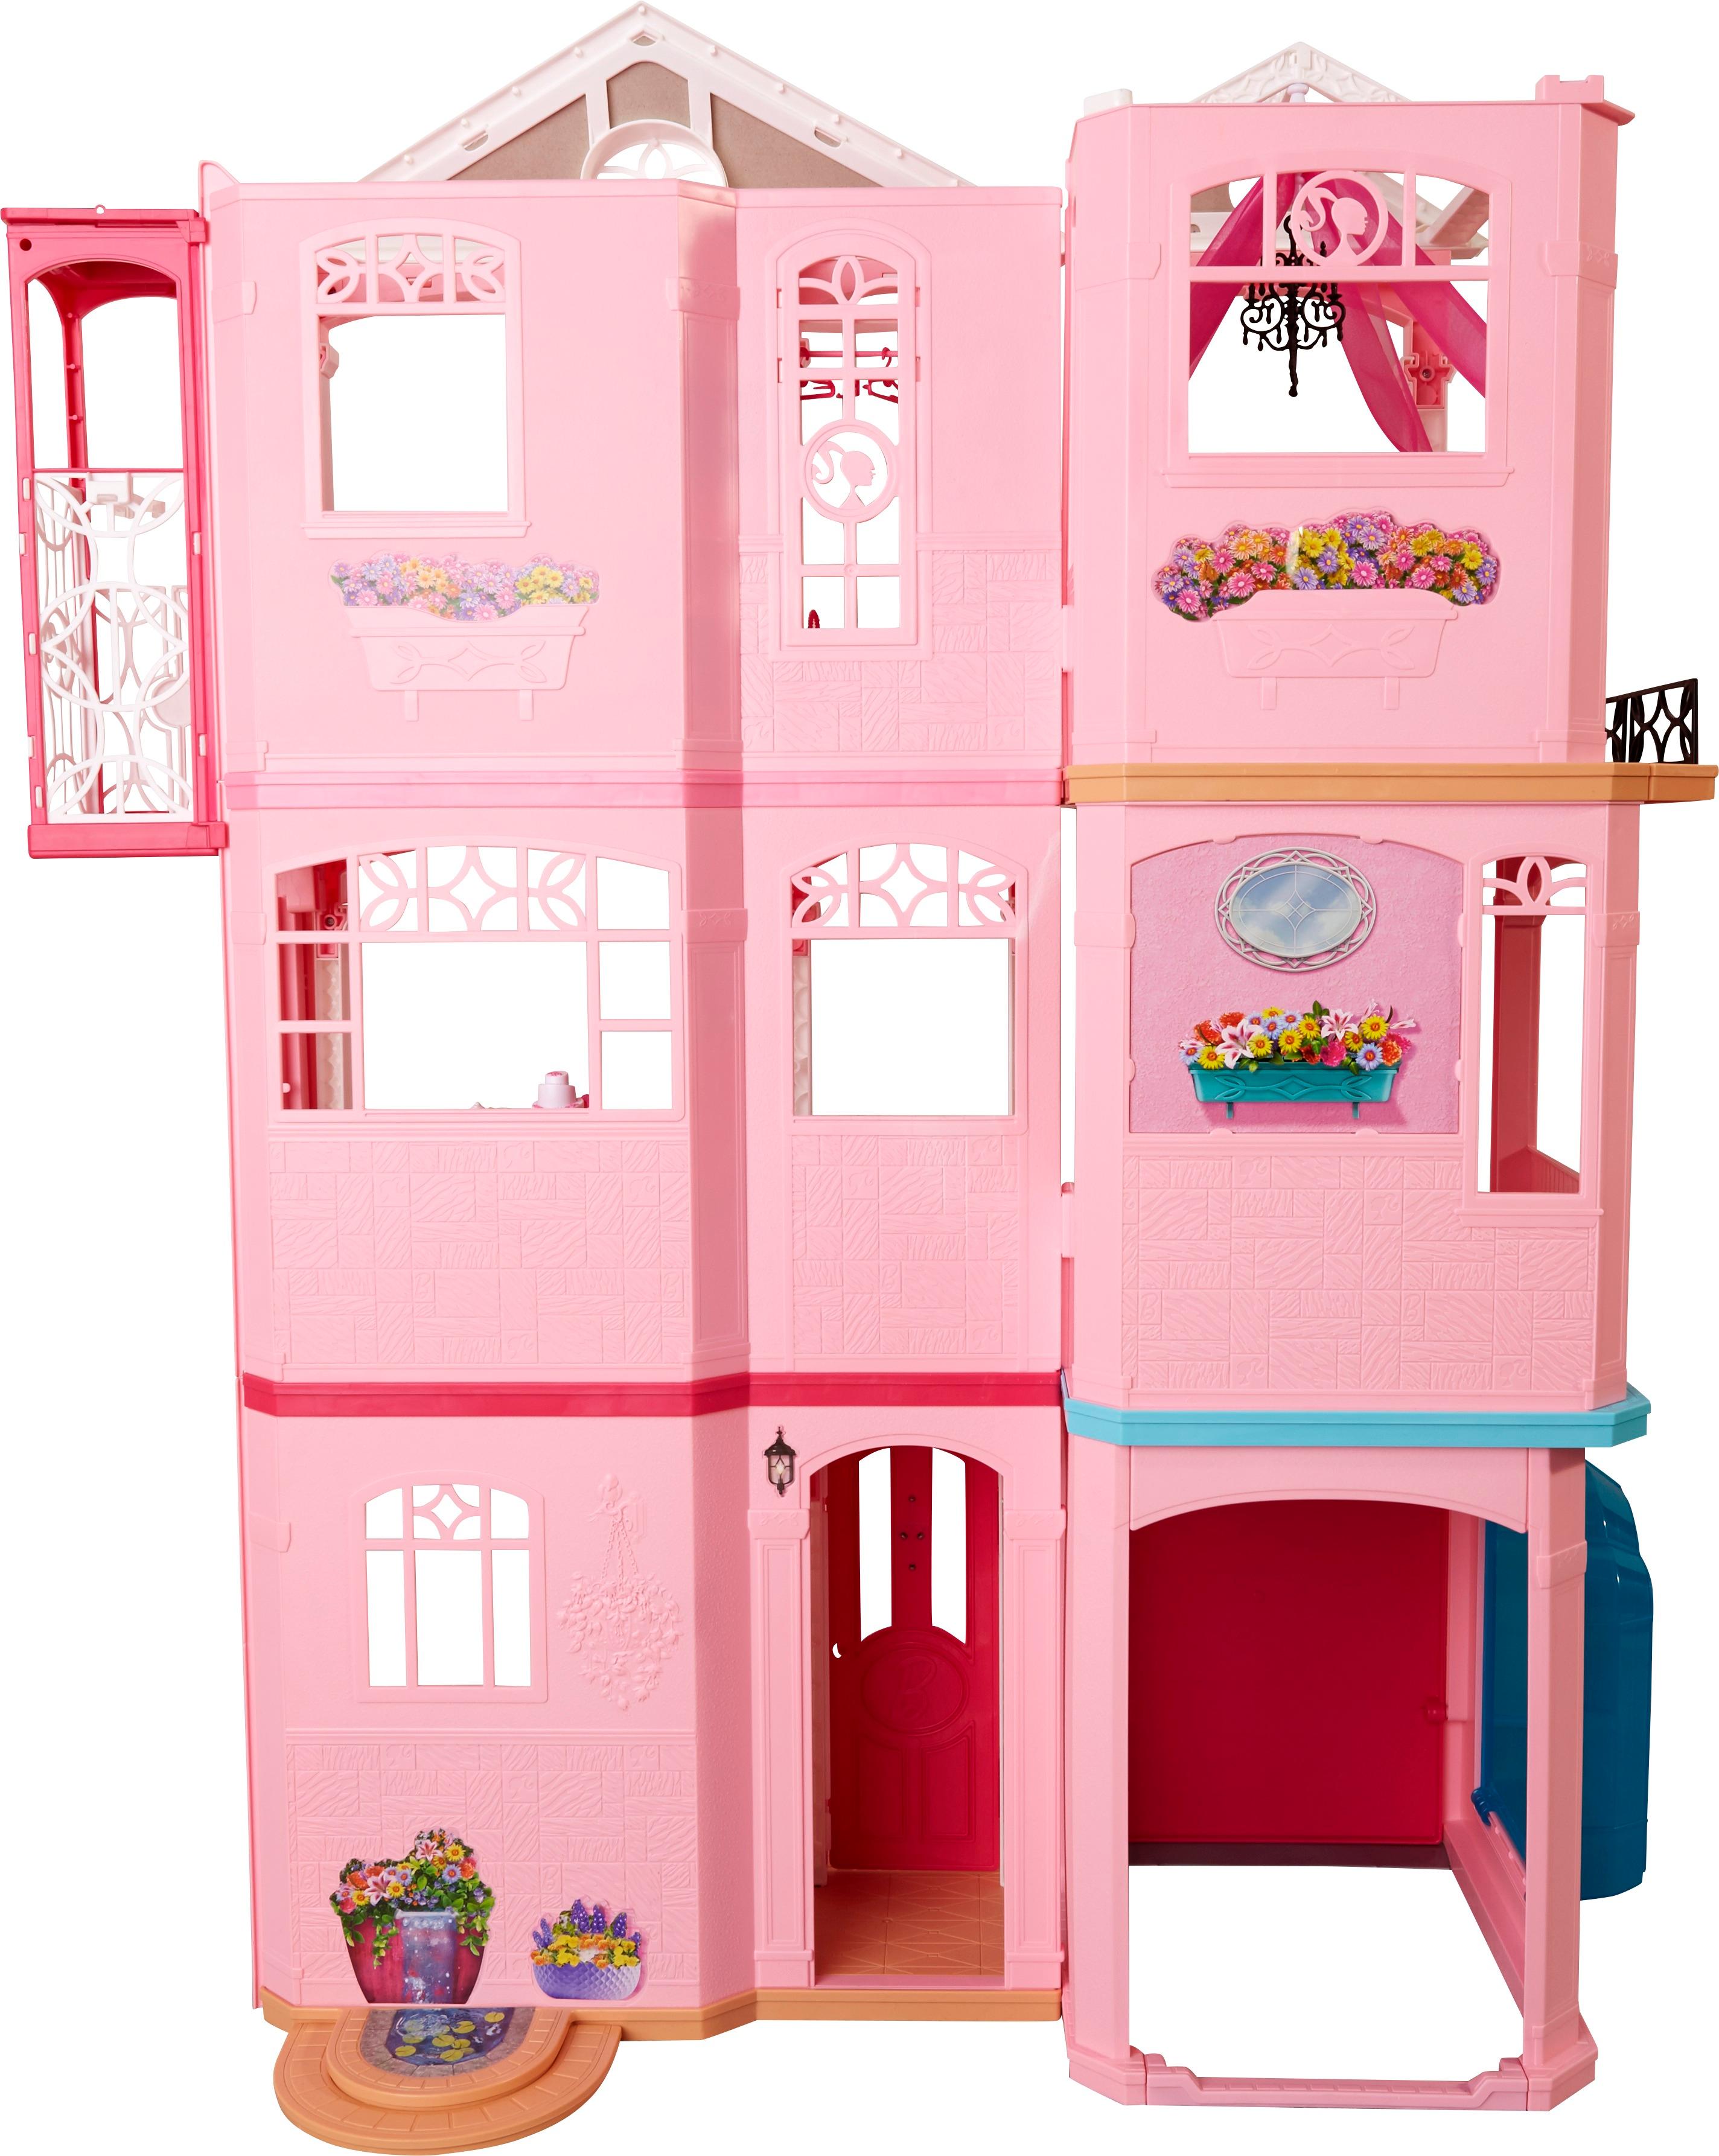 barbie dreamhouse playset mttfhy74 for sale off 73